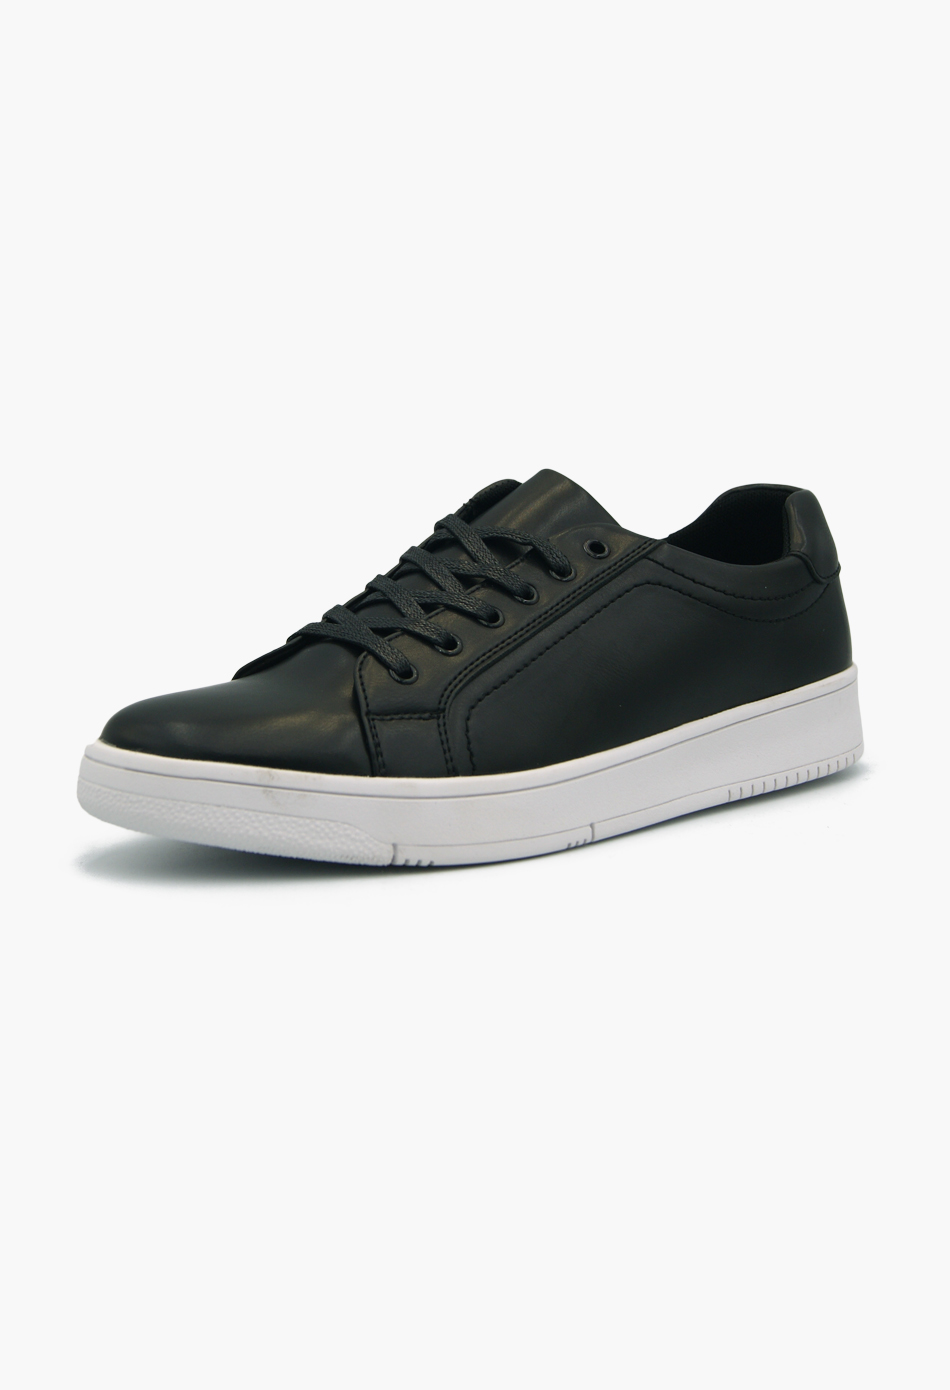 Ανδρικά Casual Sneakers Μαύρα / L22210-black ΑΘΛΗΤΙΚΑ & SNEAKERS joya.gr